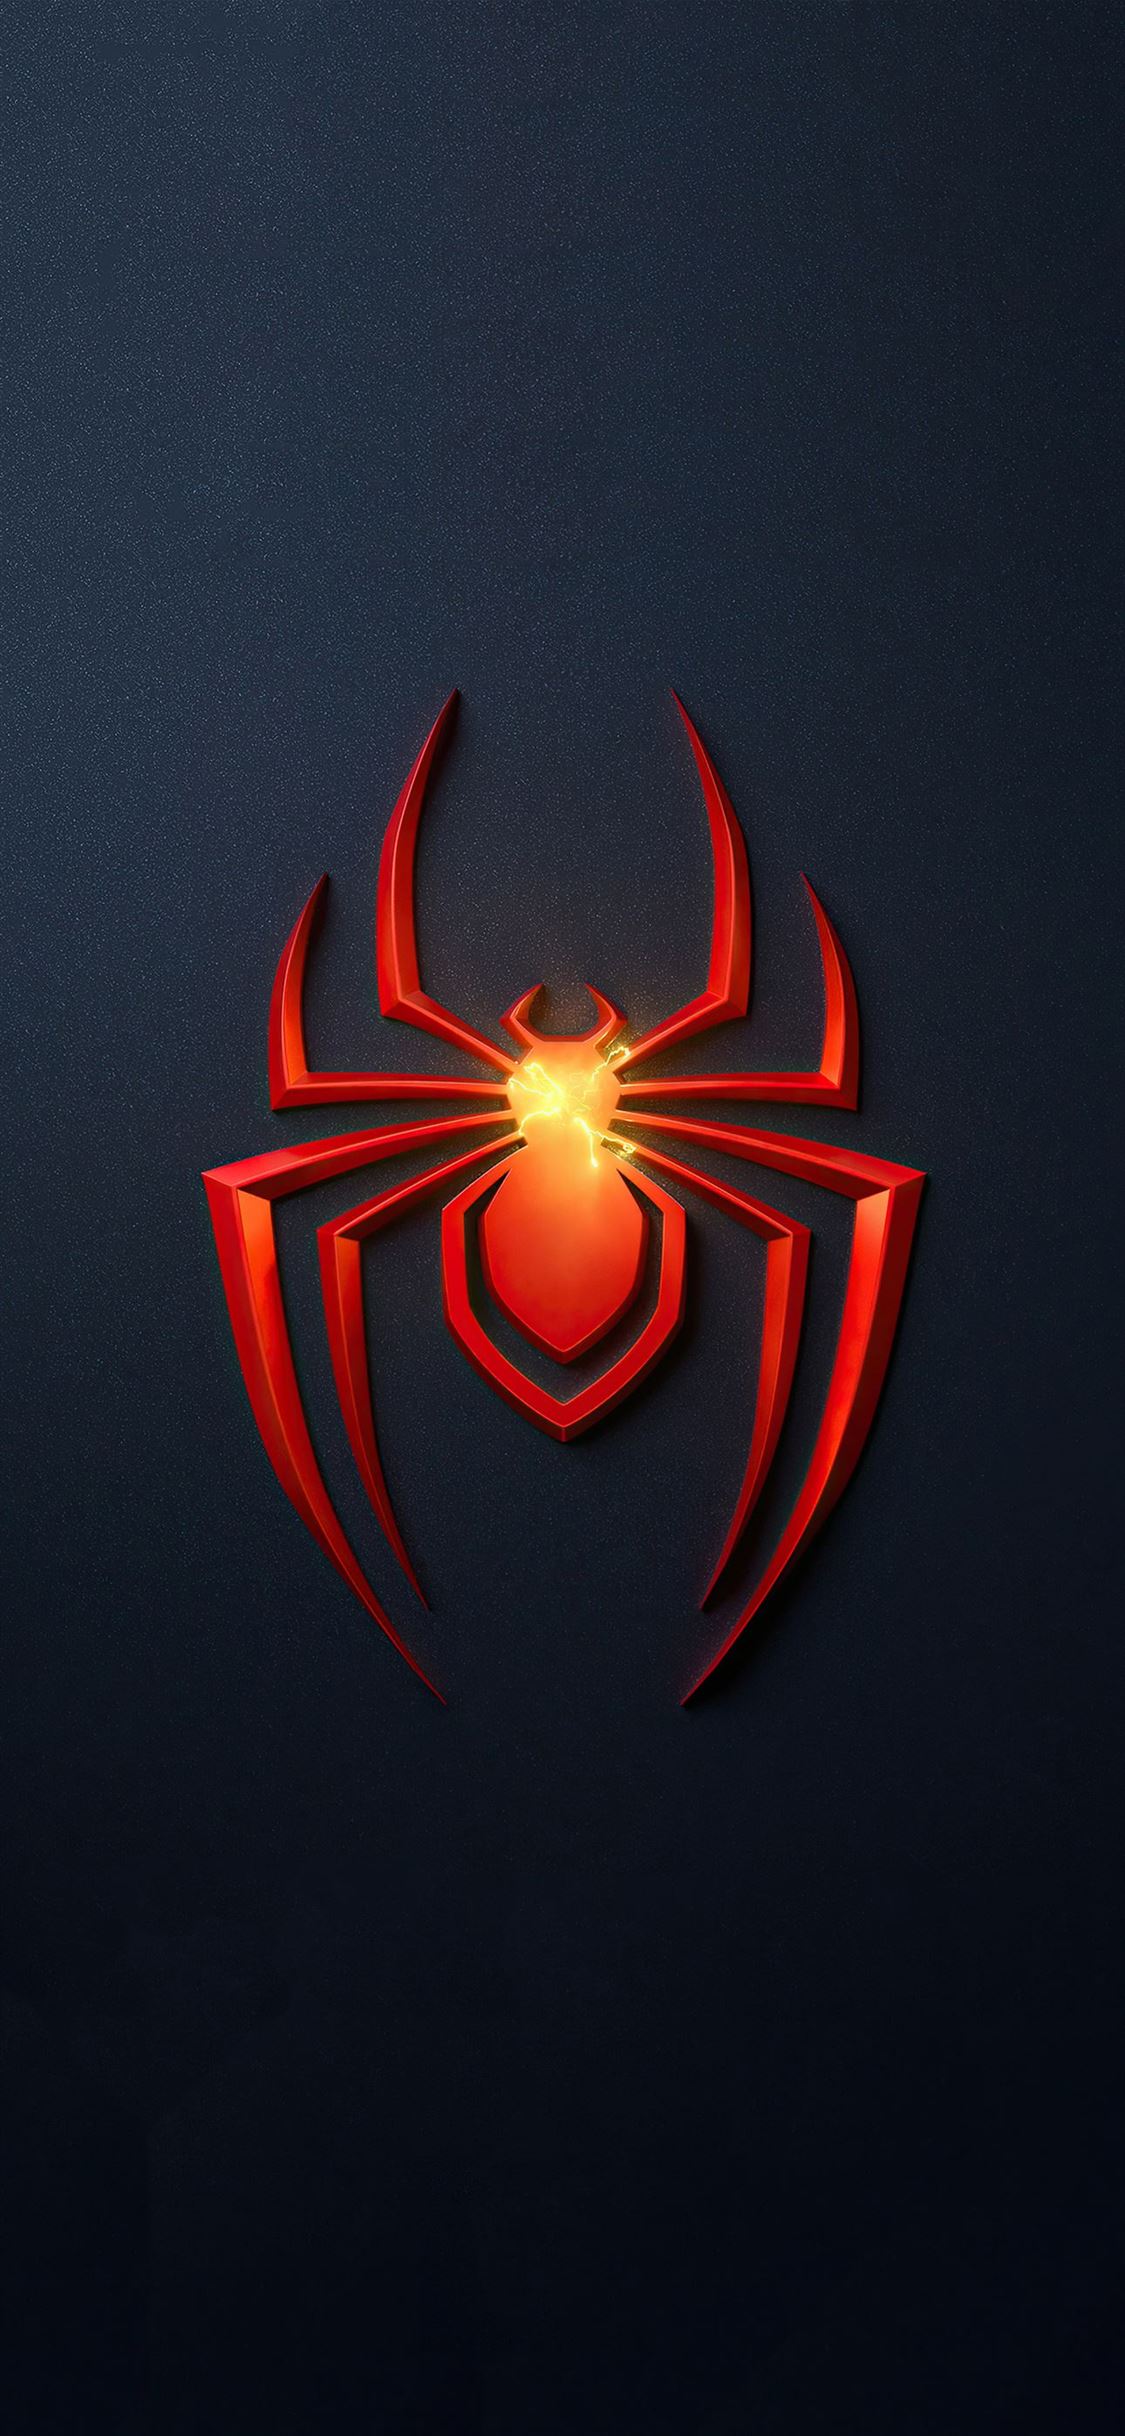 Spider Man Miles Morales PS5 Game Logo 4K là một tác phẩm đầy màu sắc và đẹp mắt, làm thỏa mãn giác quan của người xem. Hình ảnh liên quan sẽ giúp bạn hiểu rõ hơn về một trong những game quan trọng nhất của PS5 và cũng là một tác phẩm đỉnh cao của ngành công nghiệp game hiện nay. Hãy cùng xem hình ảnh để khám phá thế giới đầy màu sắc này.